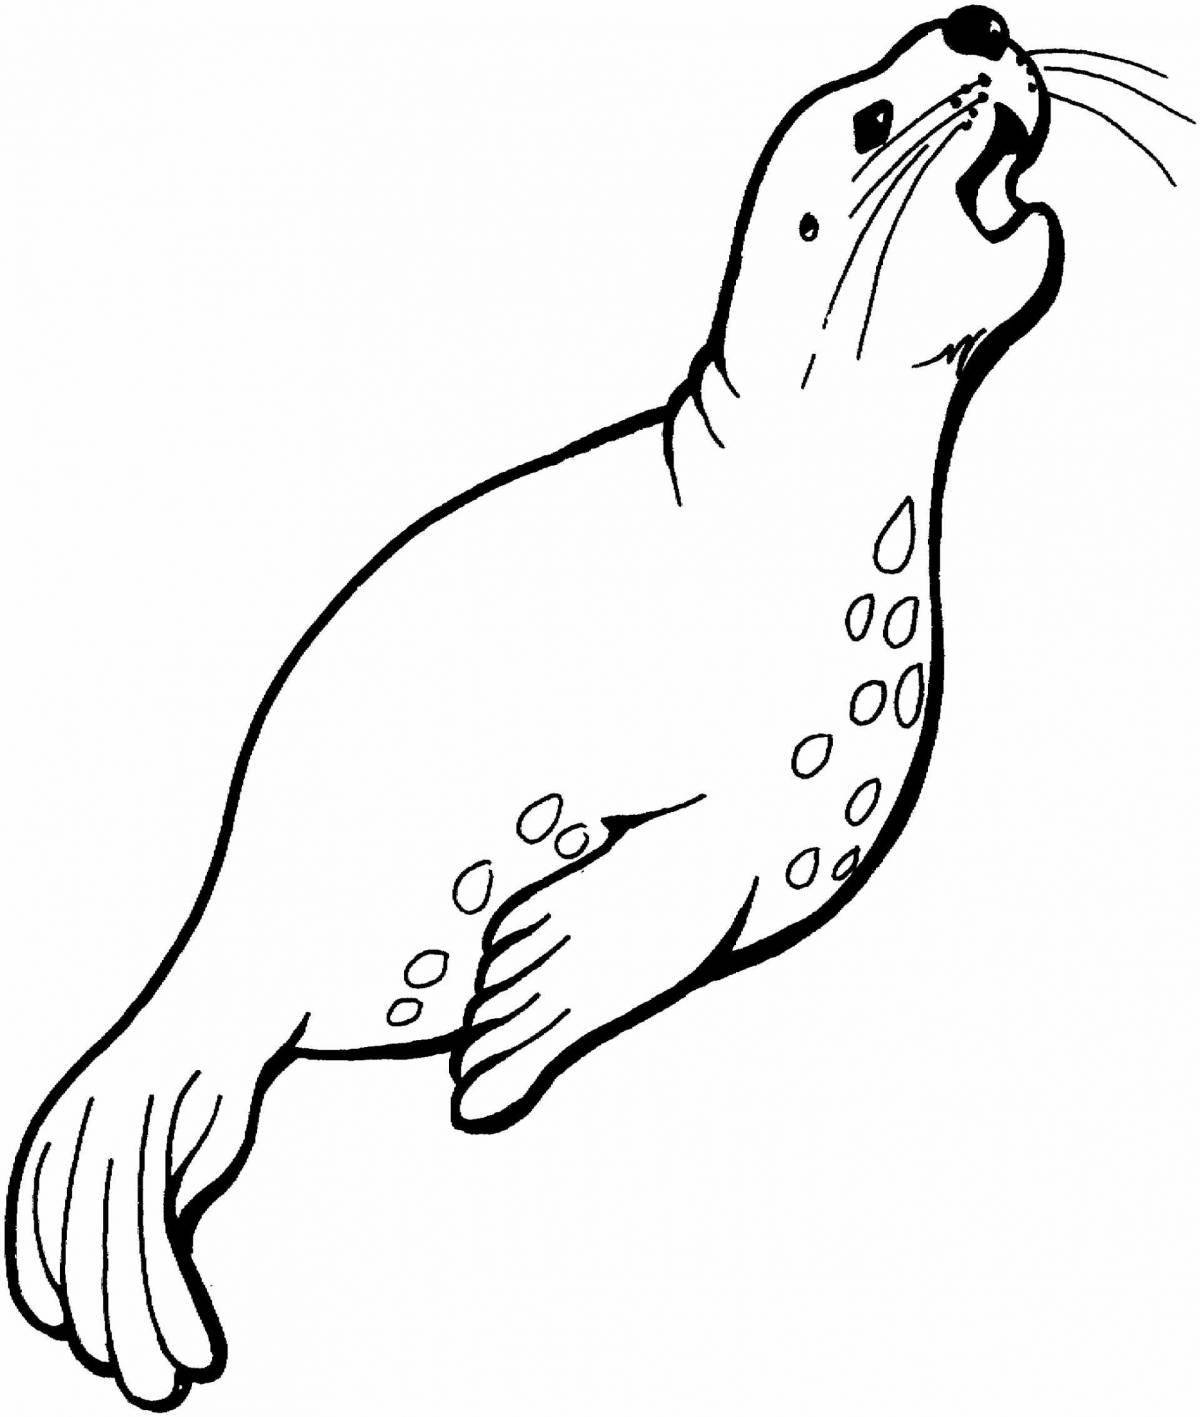 Fur seal coloring book for kids